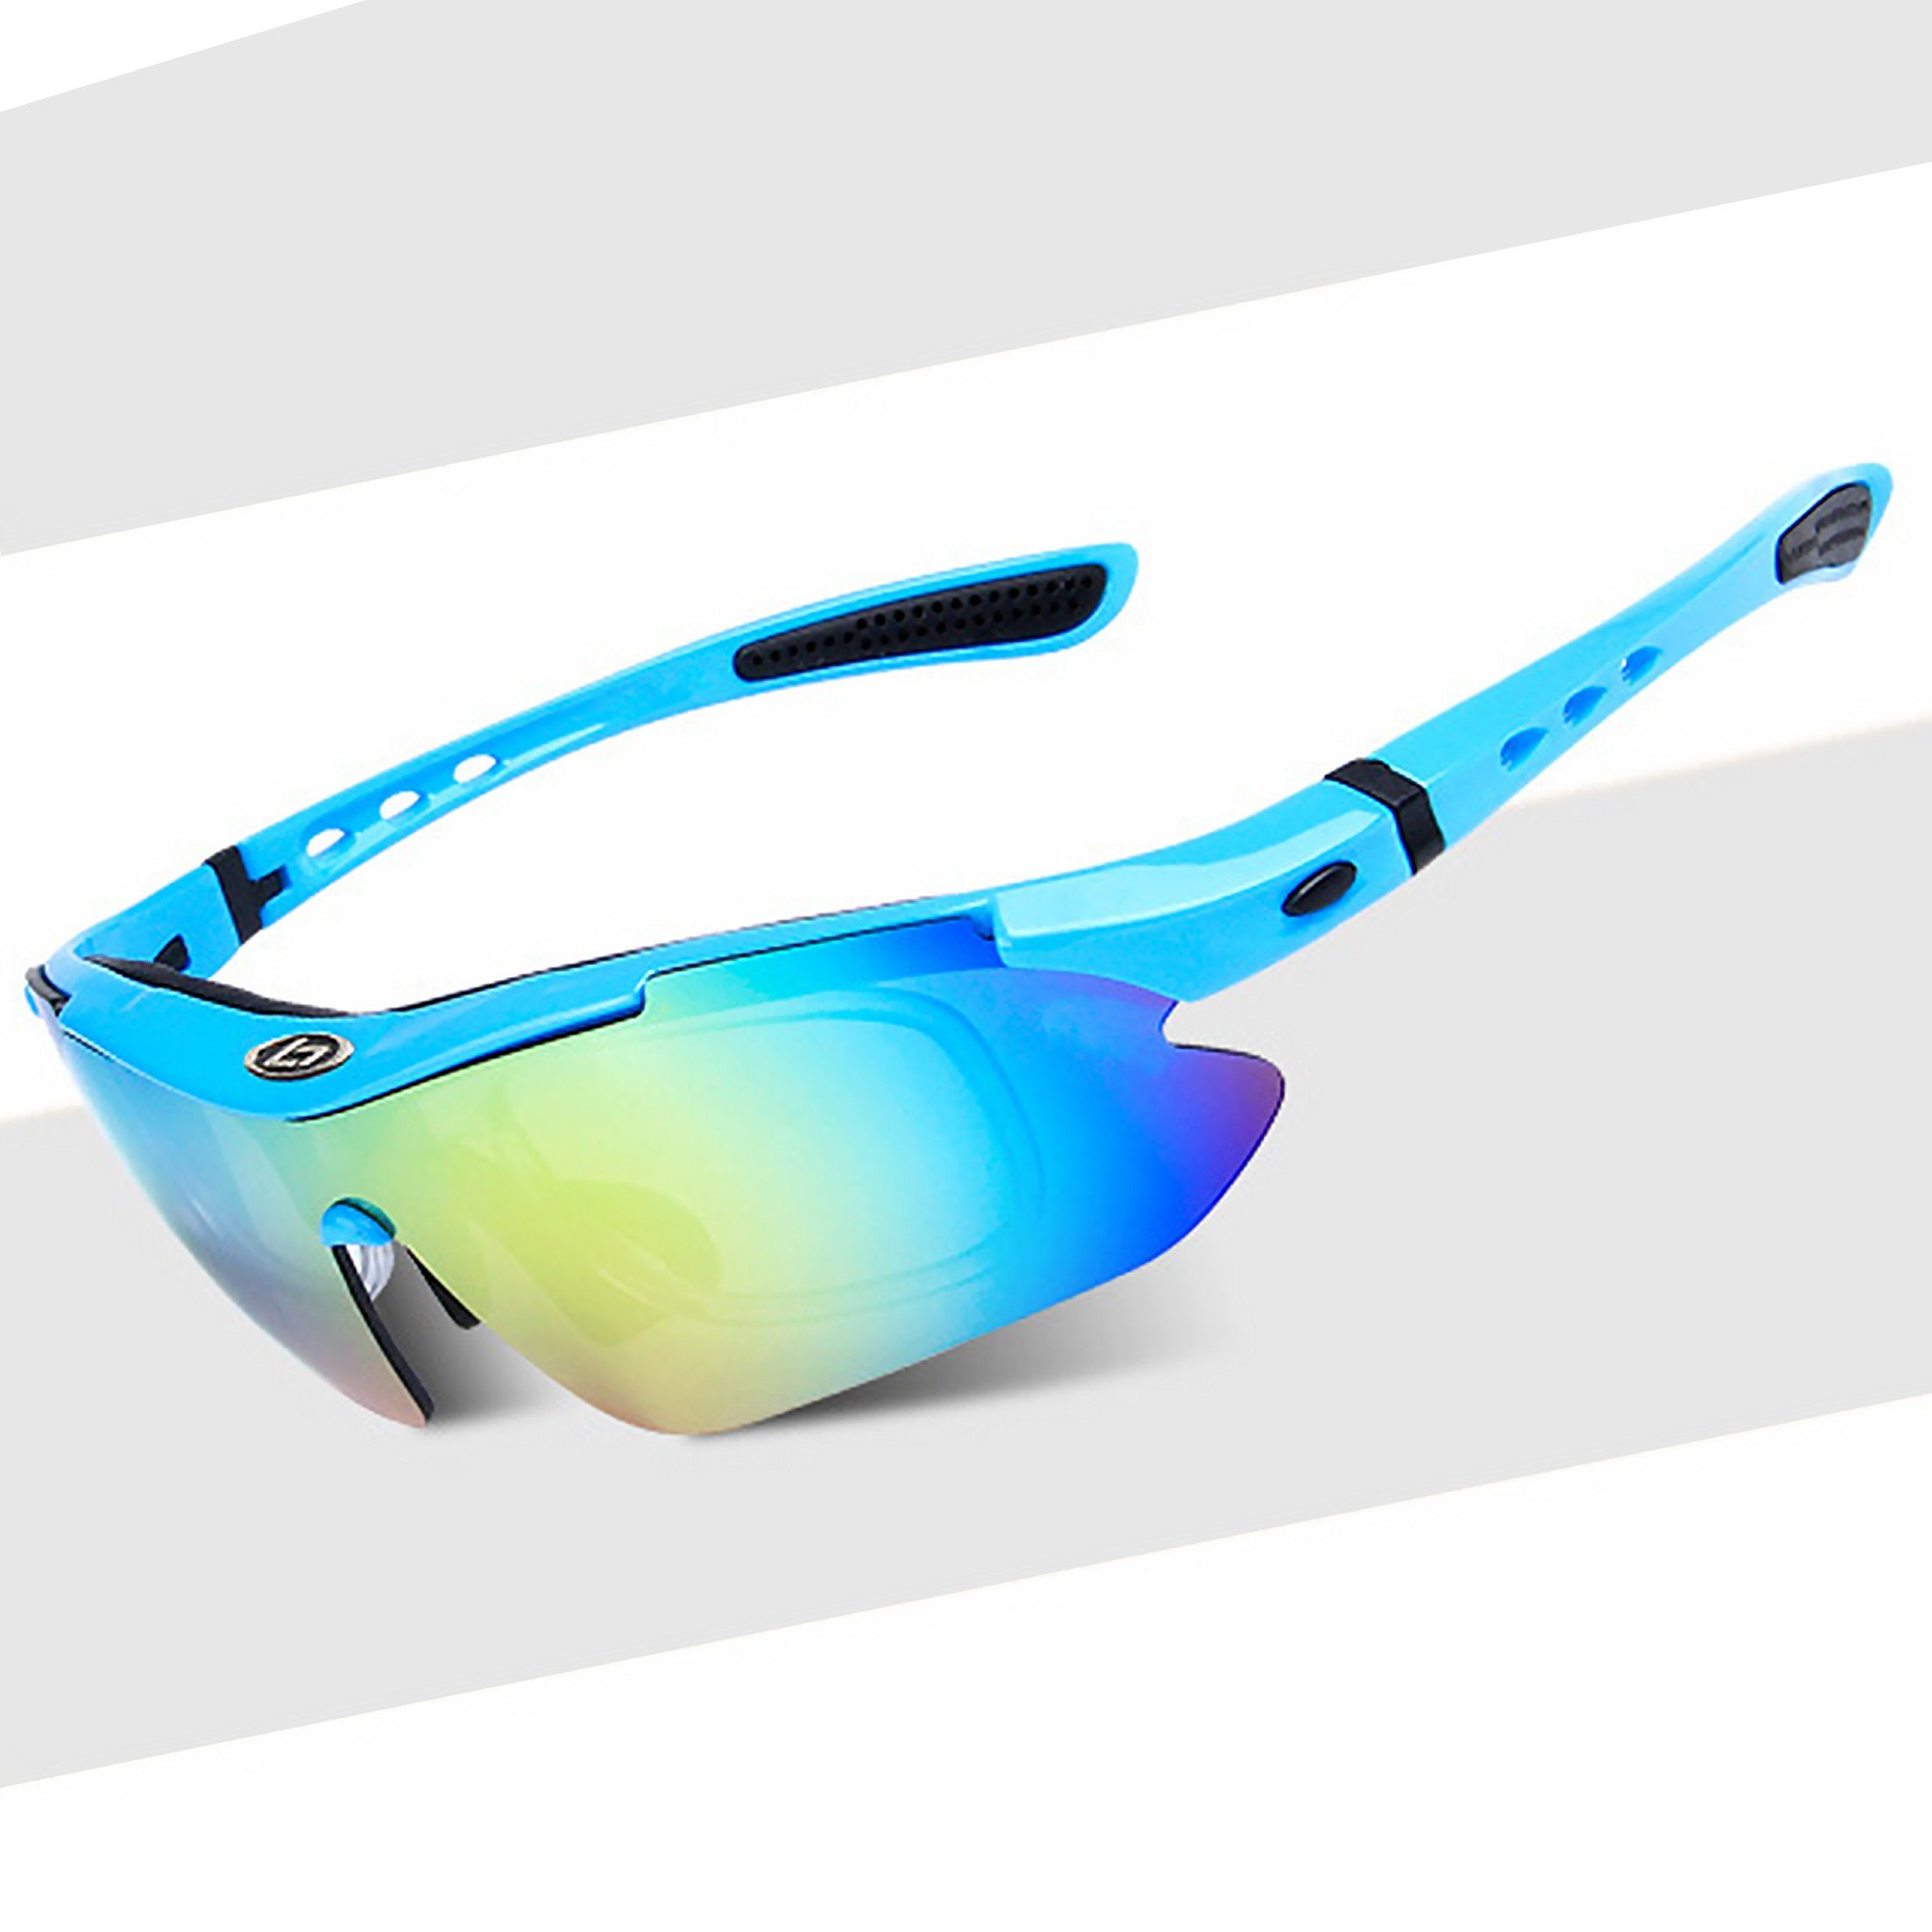 austauschbaren Radsportbrille, und Sportbrille, mit LeiGo UV-400-Schutz Sonnenbrille, Fahrradbrille Frauen Männer für Gläsern Radsportbrille, Fluoreszierendes-Blau 4 polarisierte